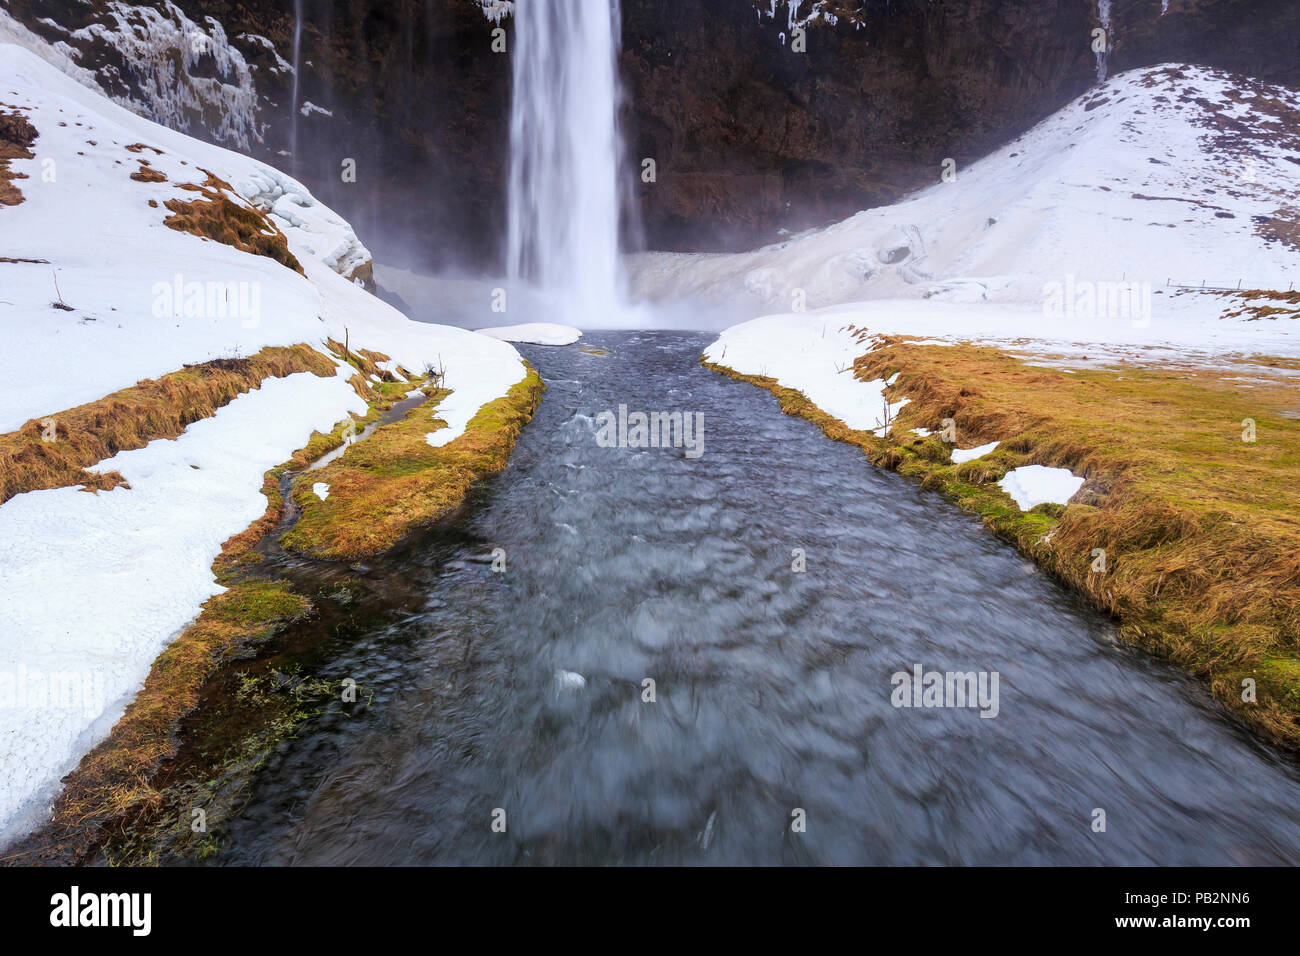 L'Islande vue les grandes chutes d'eau de Seljalandsfoss dans un paramètre d'hiver de neige et de glace. Banque D'Images